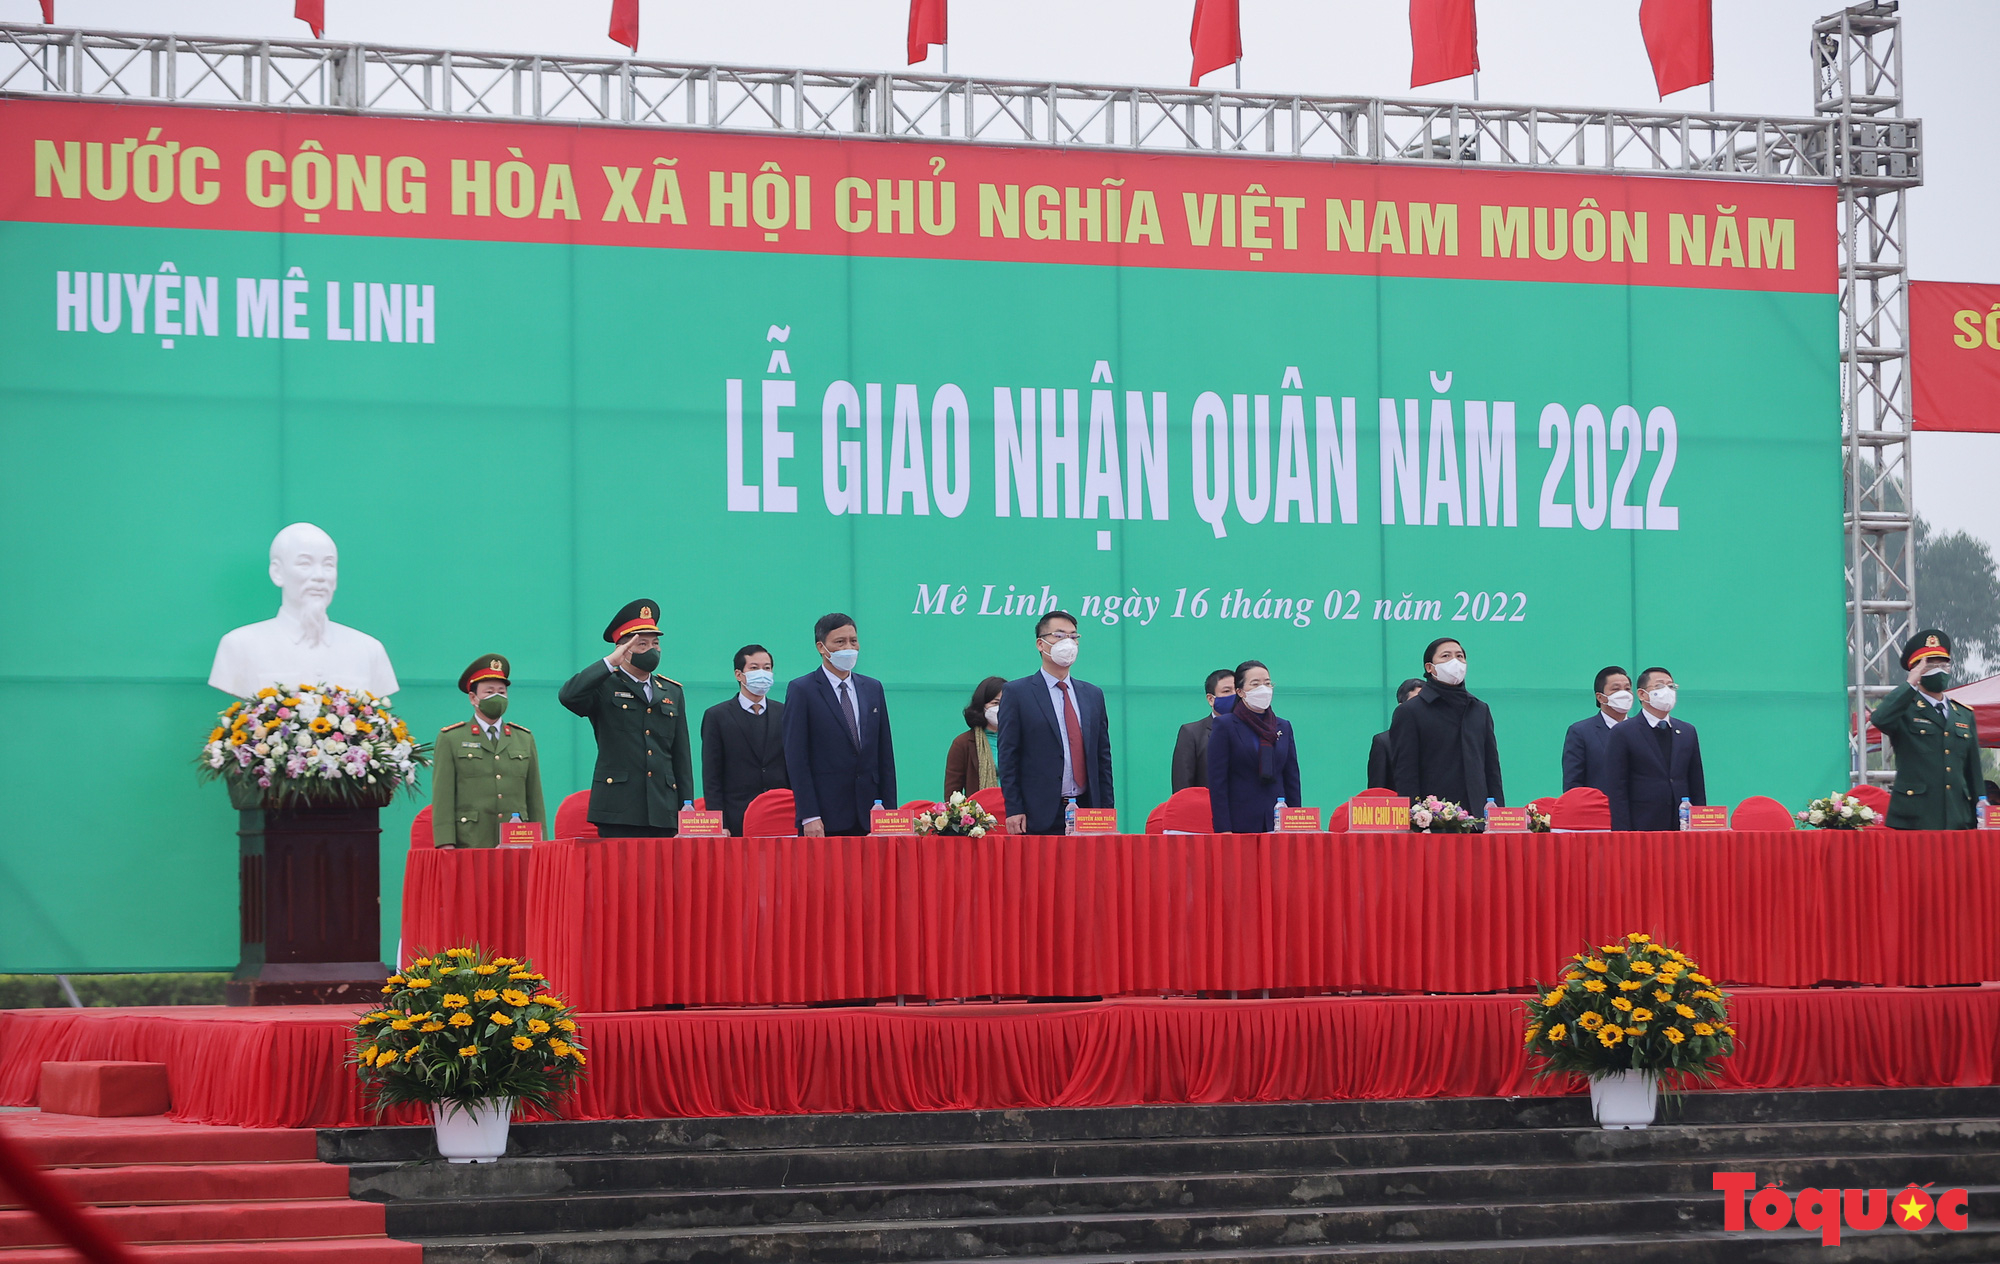 Mê Linh (Hà Nội): Lễ giao nhận quân năm 2022 được tổ chức trang trọng, nhanh gọn, bảo đảm an toàn - Ảnh 2.